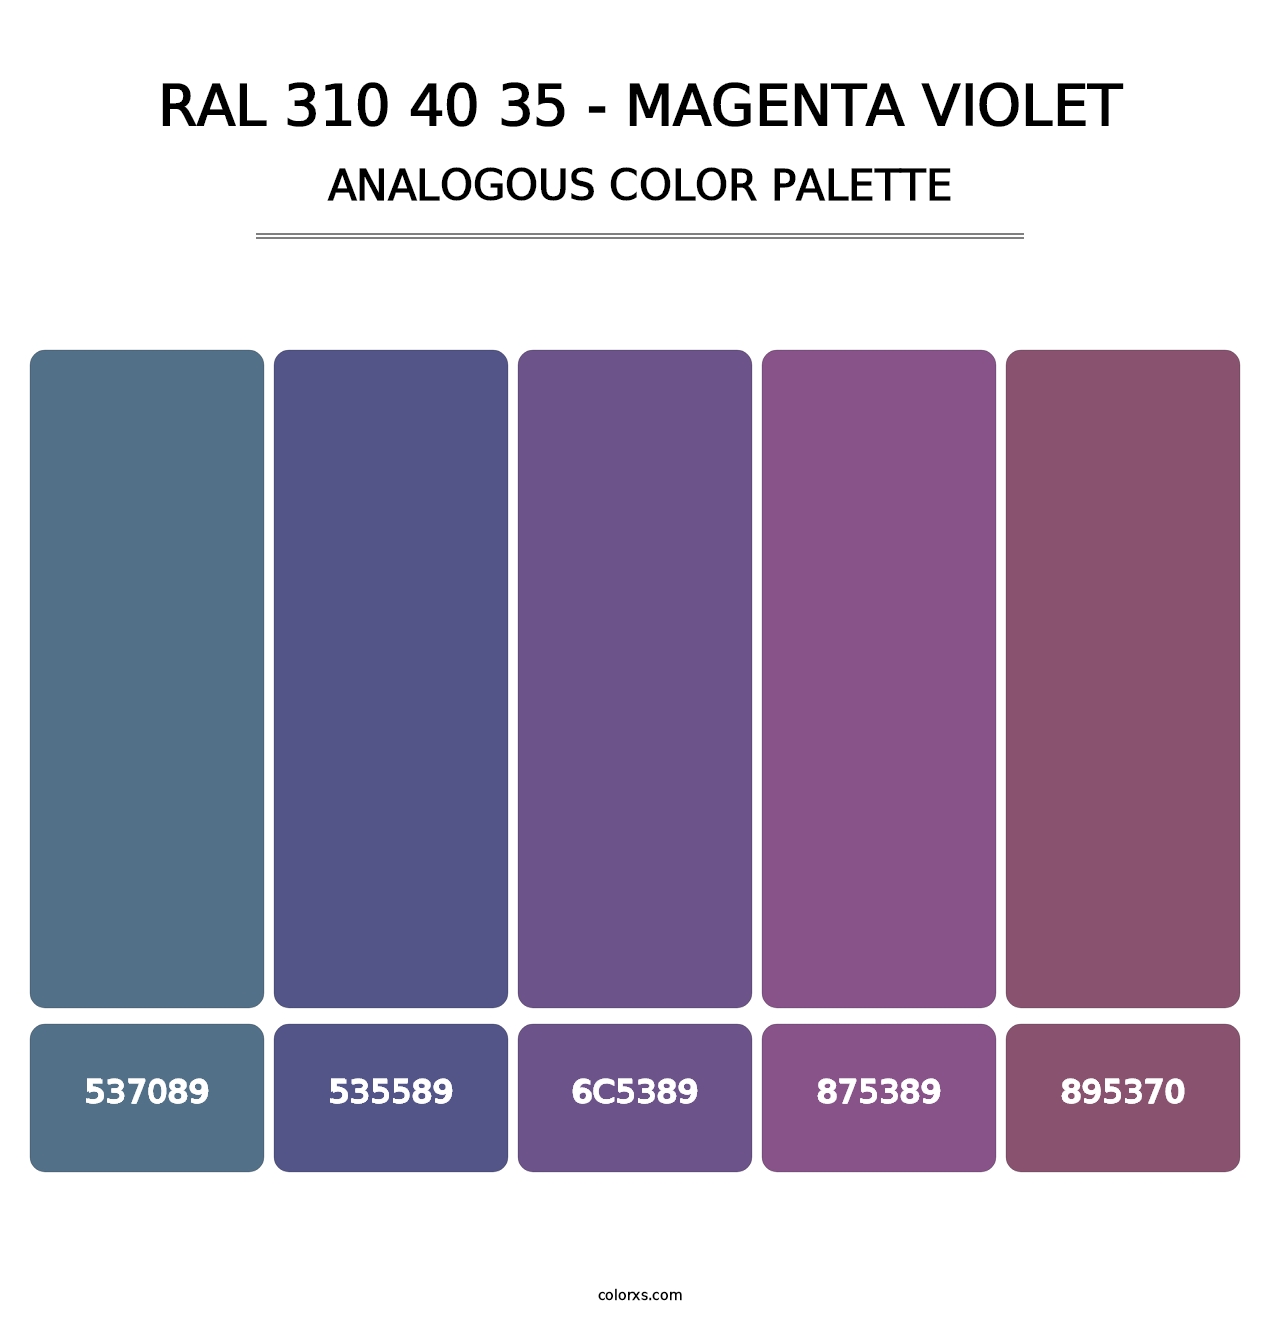 RAL 310 40 35 - Magenta Violet - Analogous Color Palette